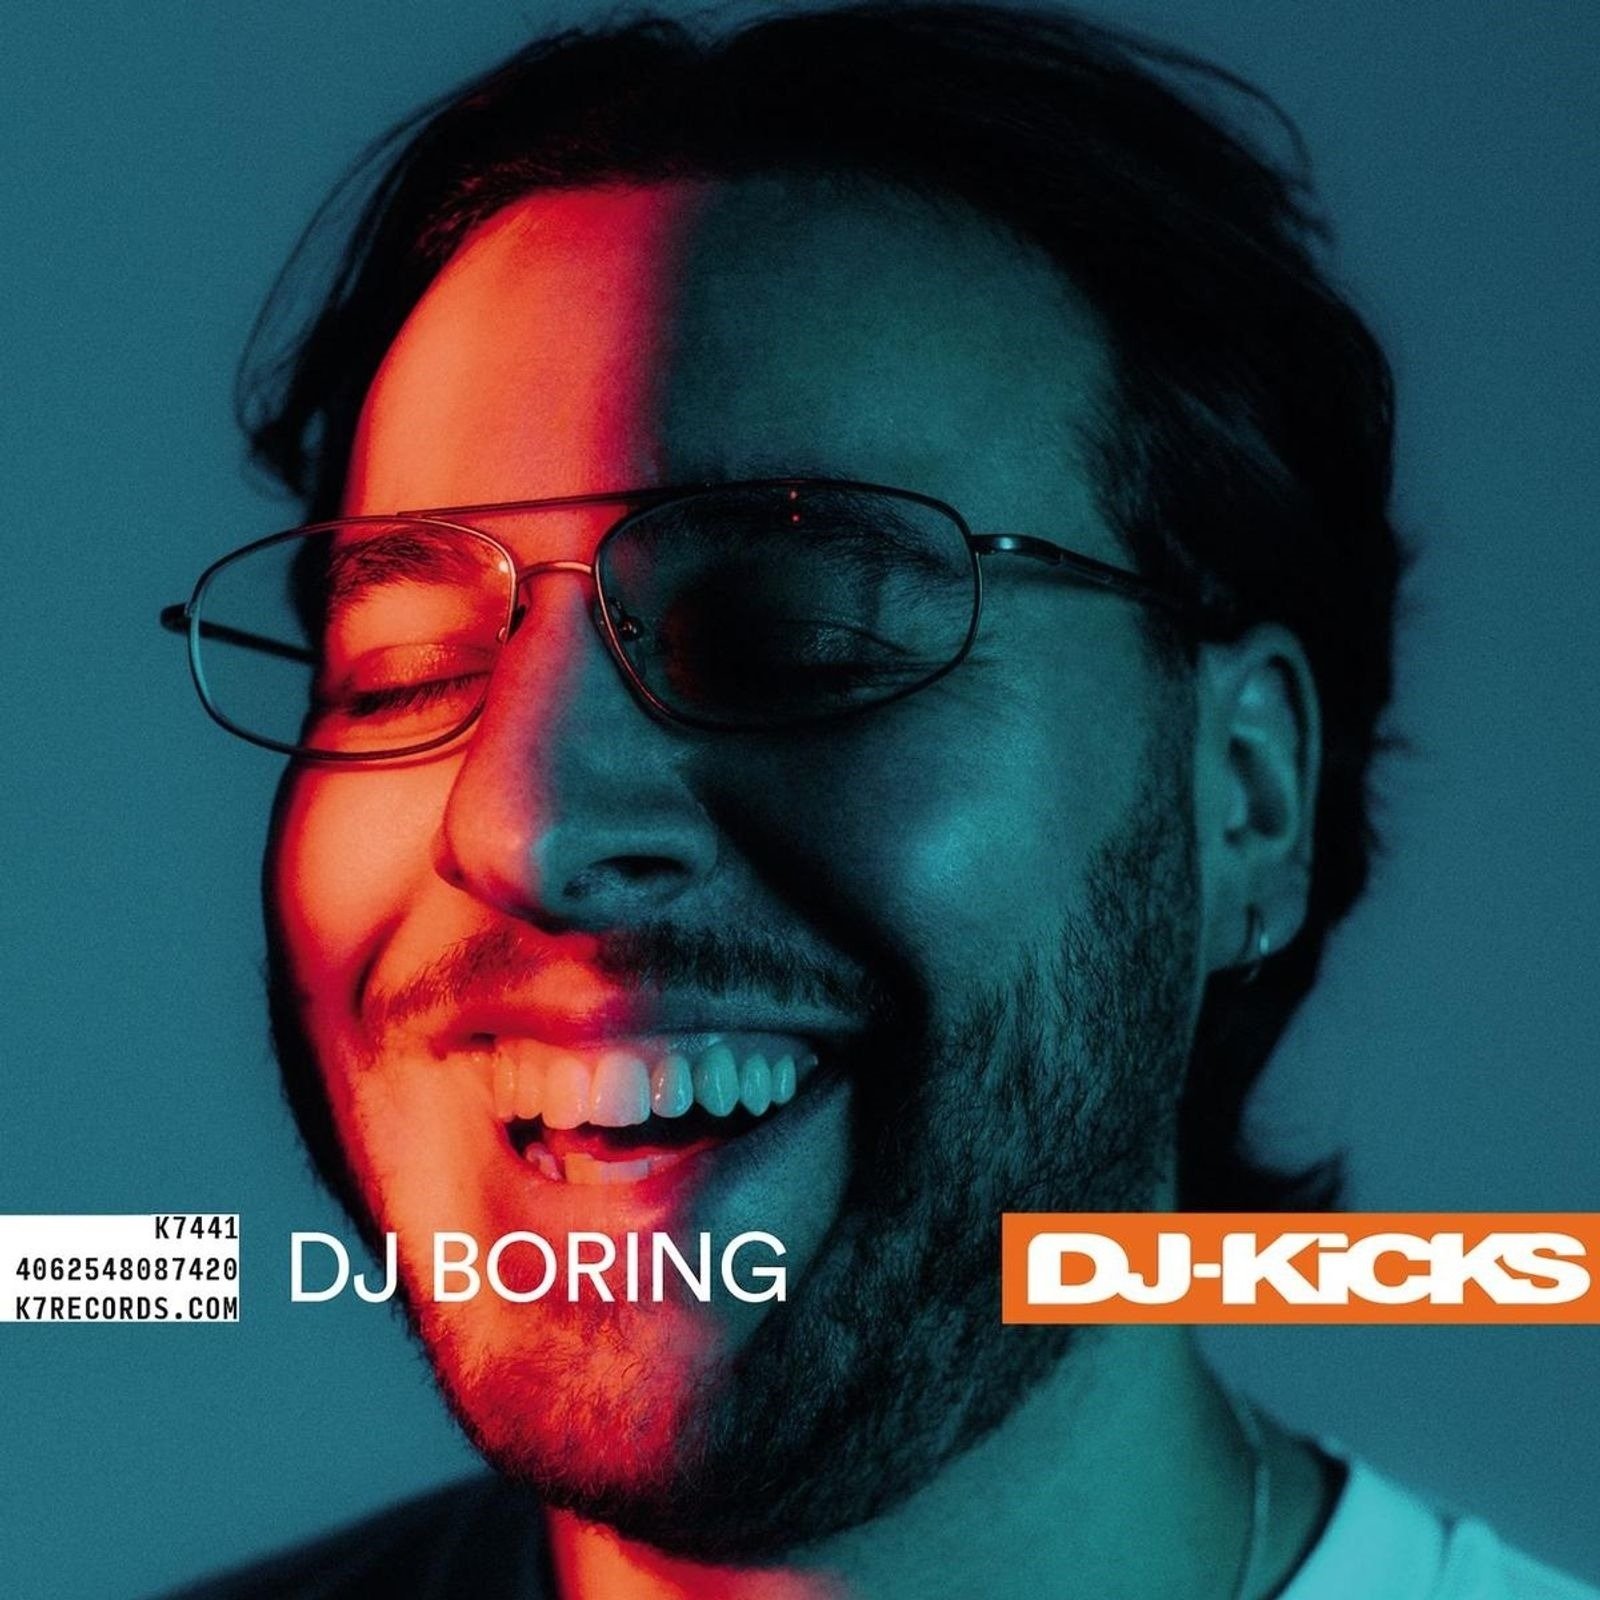 CD Shop - BORING, DJ DJ-KICKS: DJ BORING